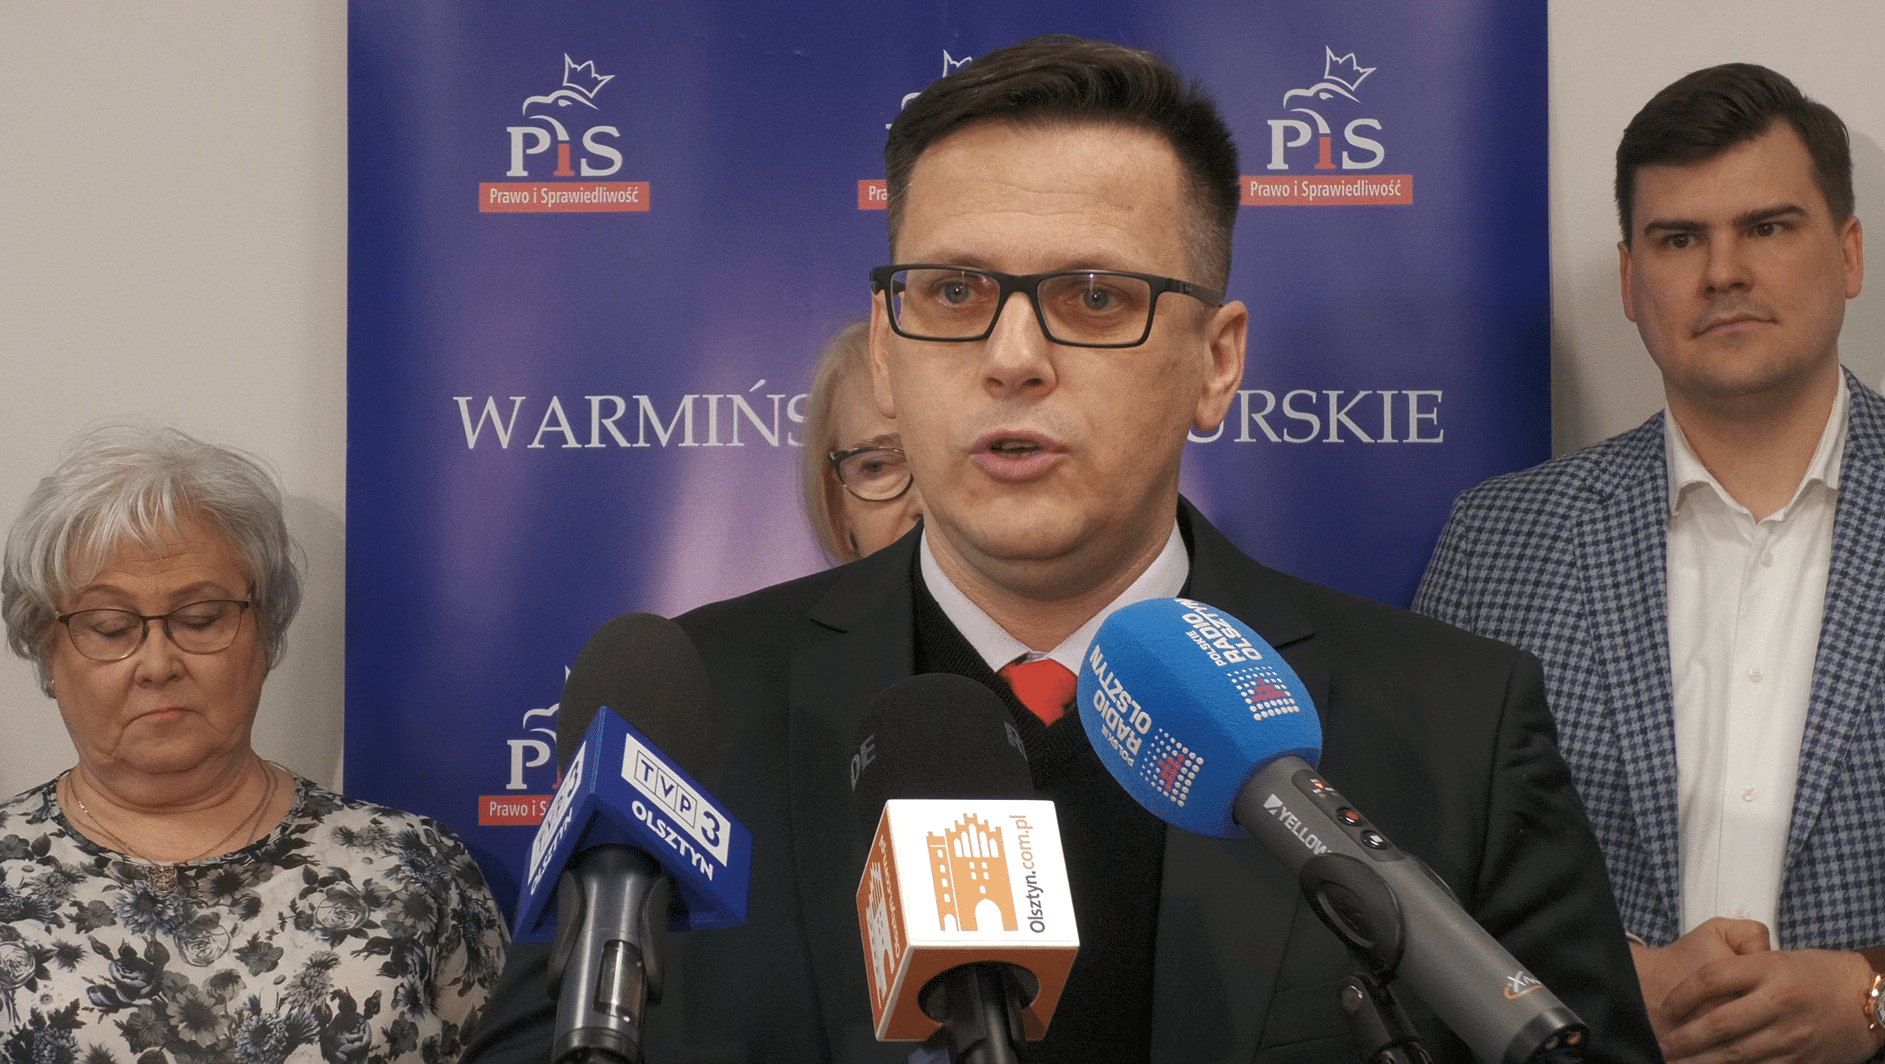 PiS stawia na doświadczenie w wyborach do sejmiku warmińsko-mazurskiego polityka Wiadomości, zShowcase